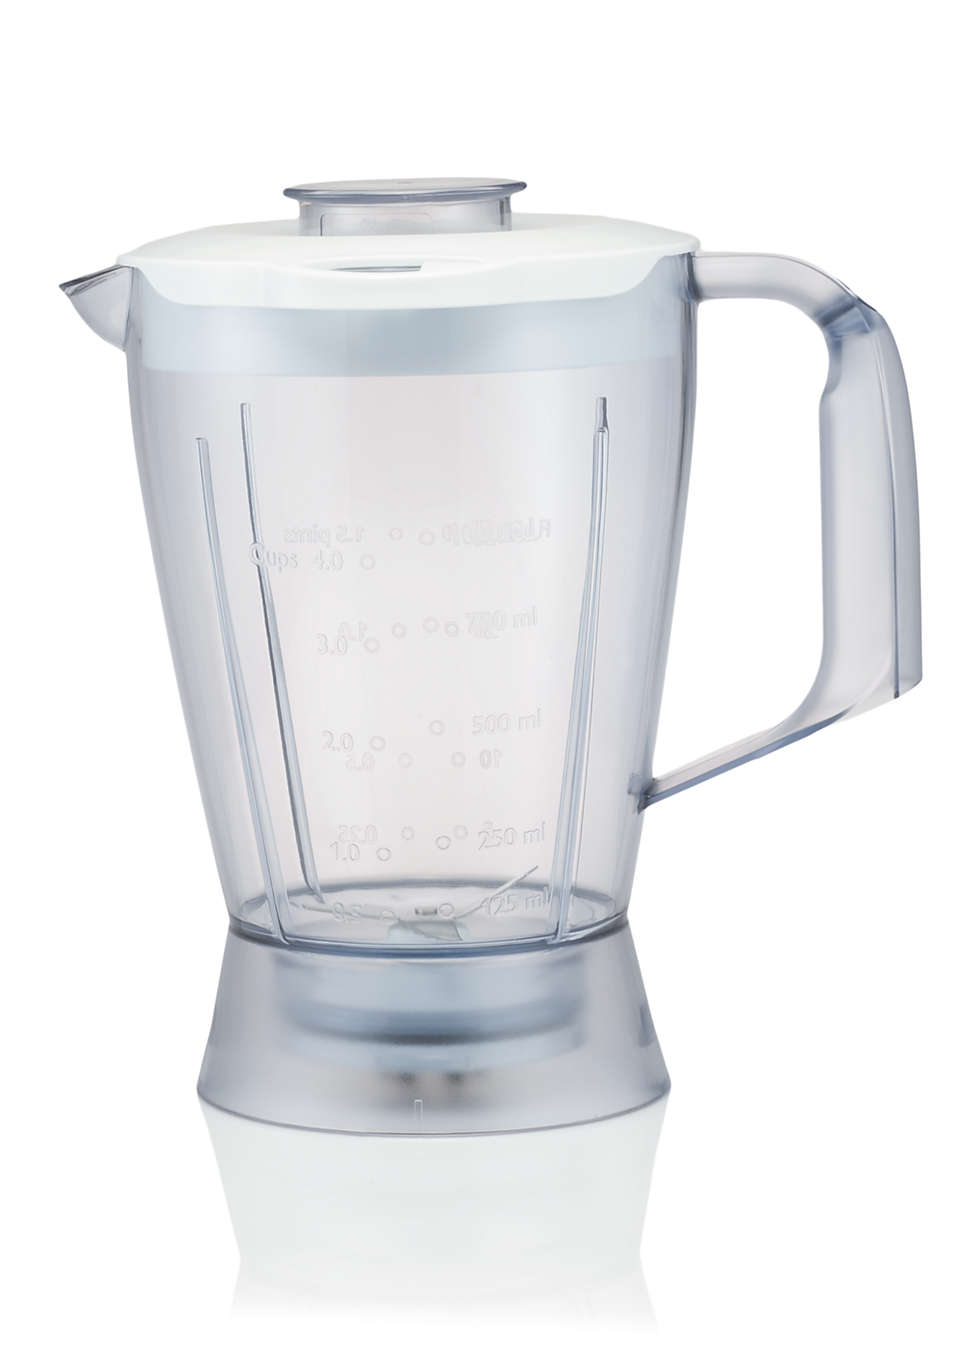 Blender beaker for food processor